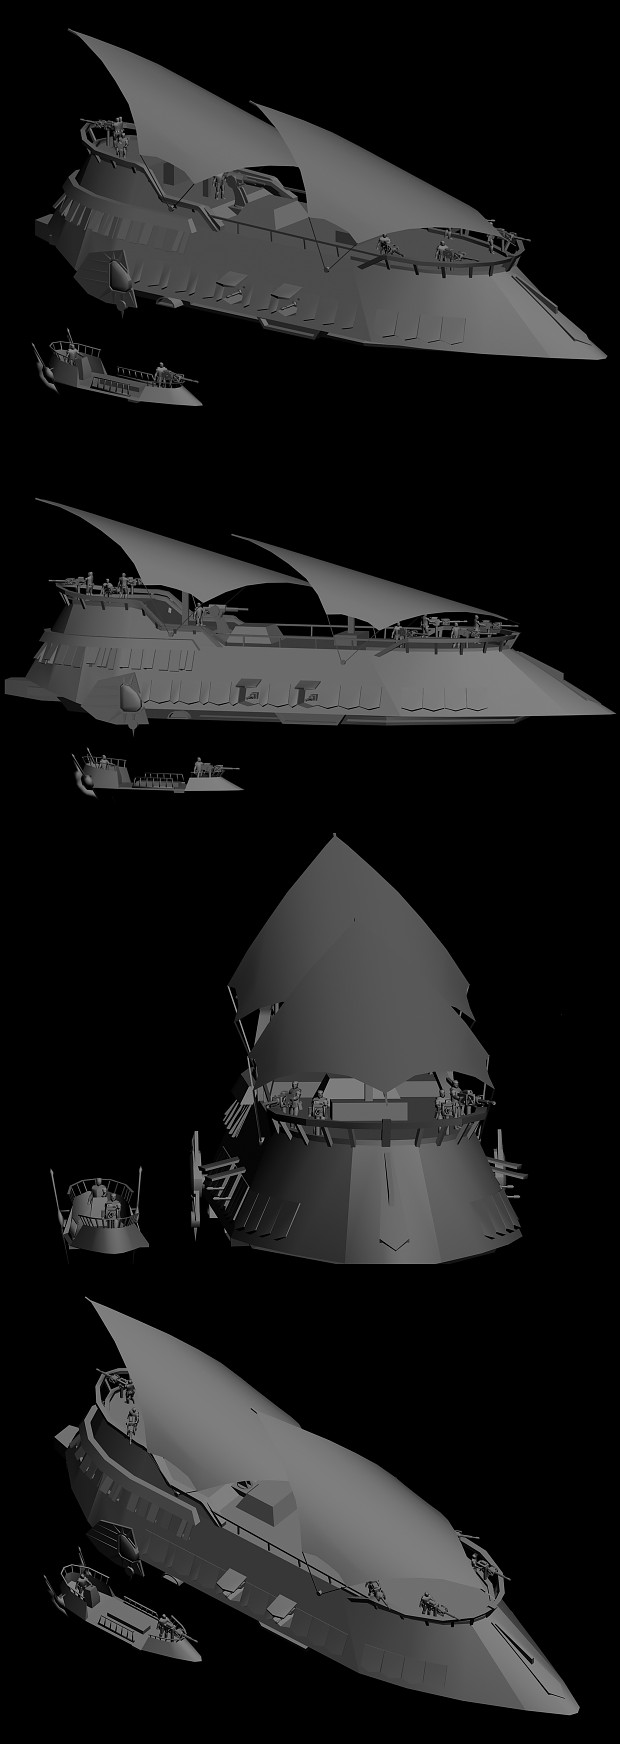 Khetanna-Class War Barge